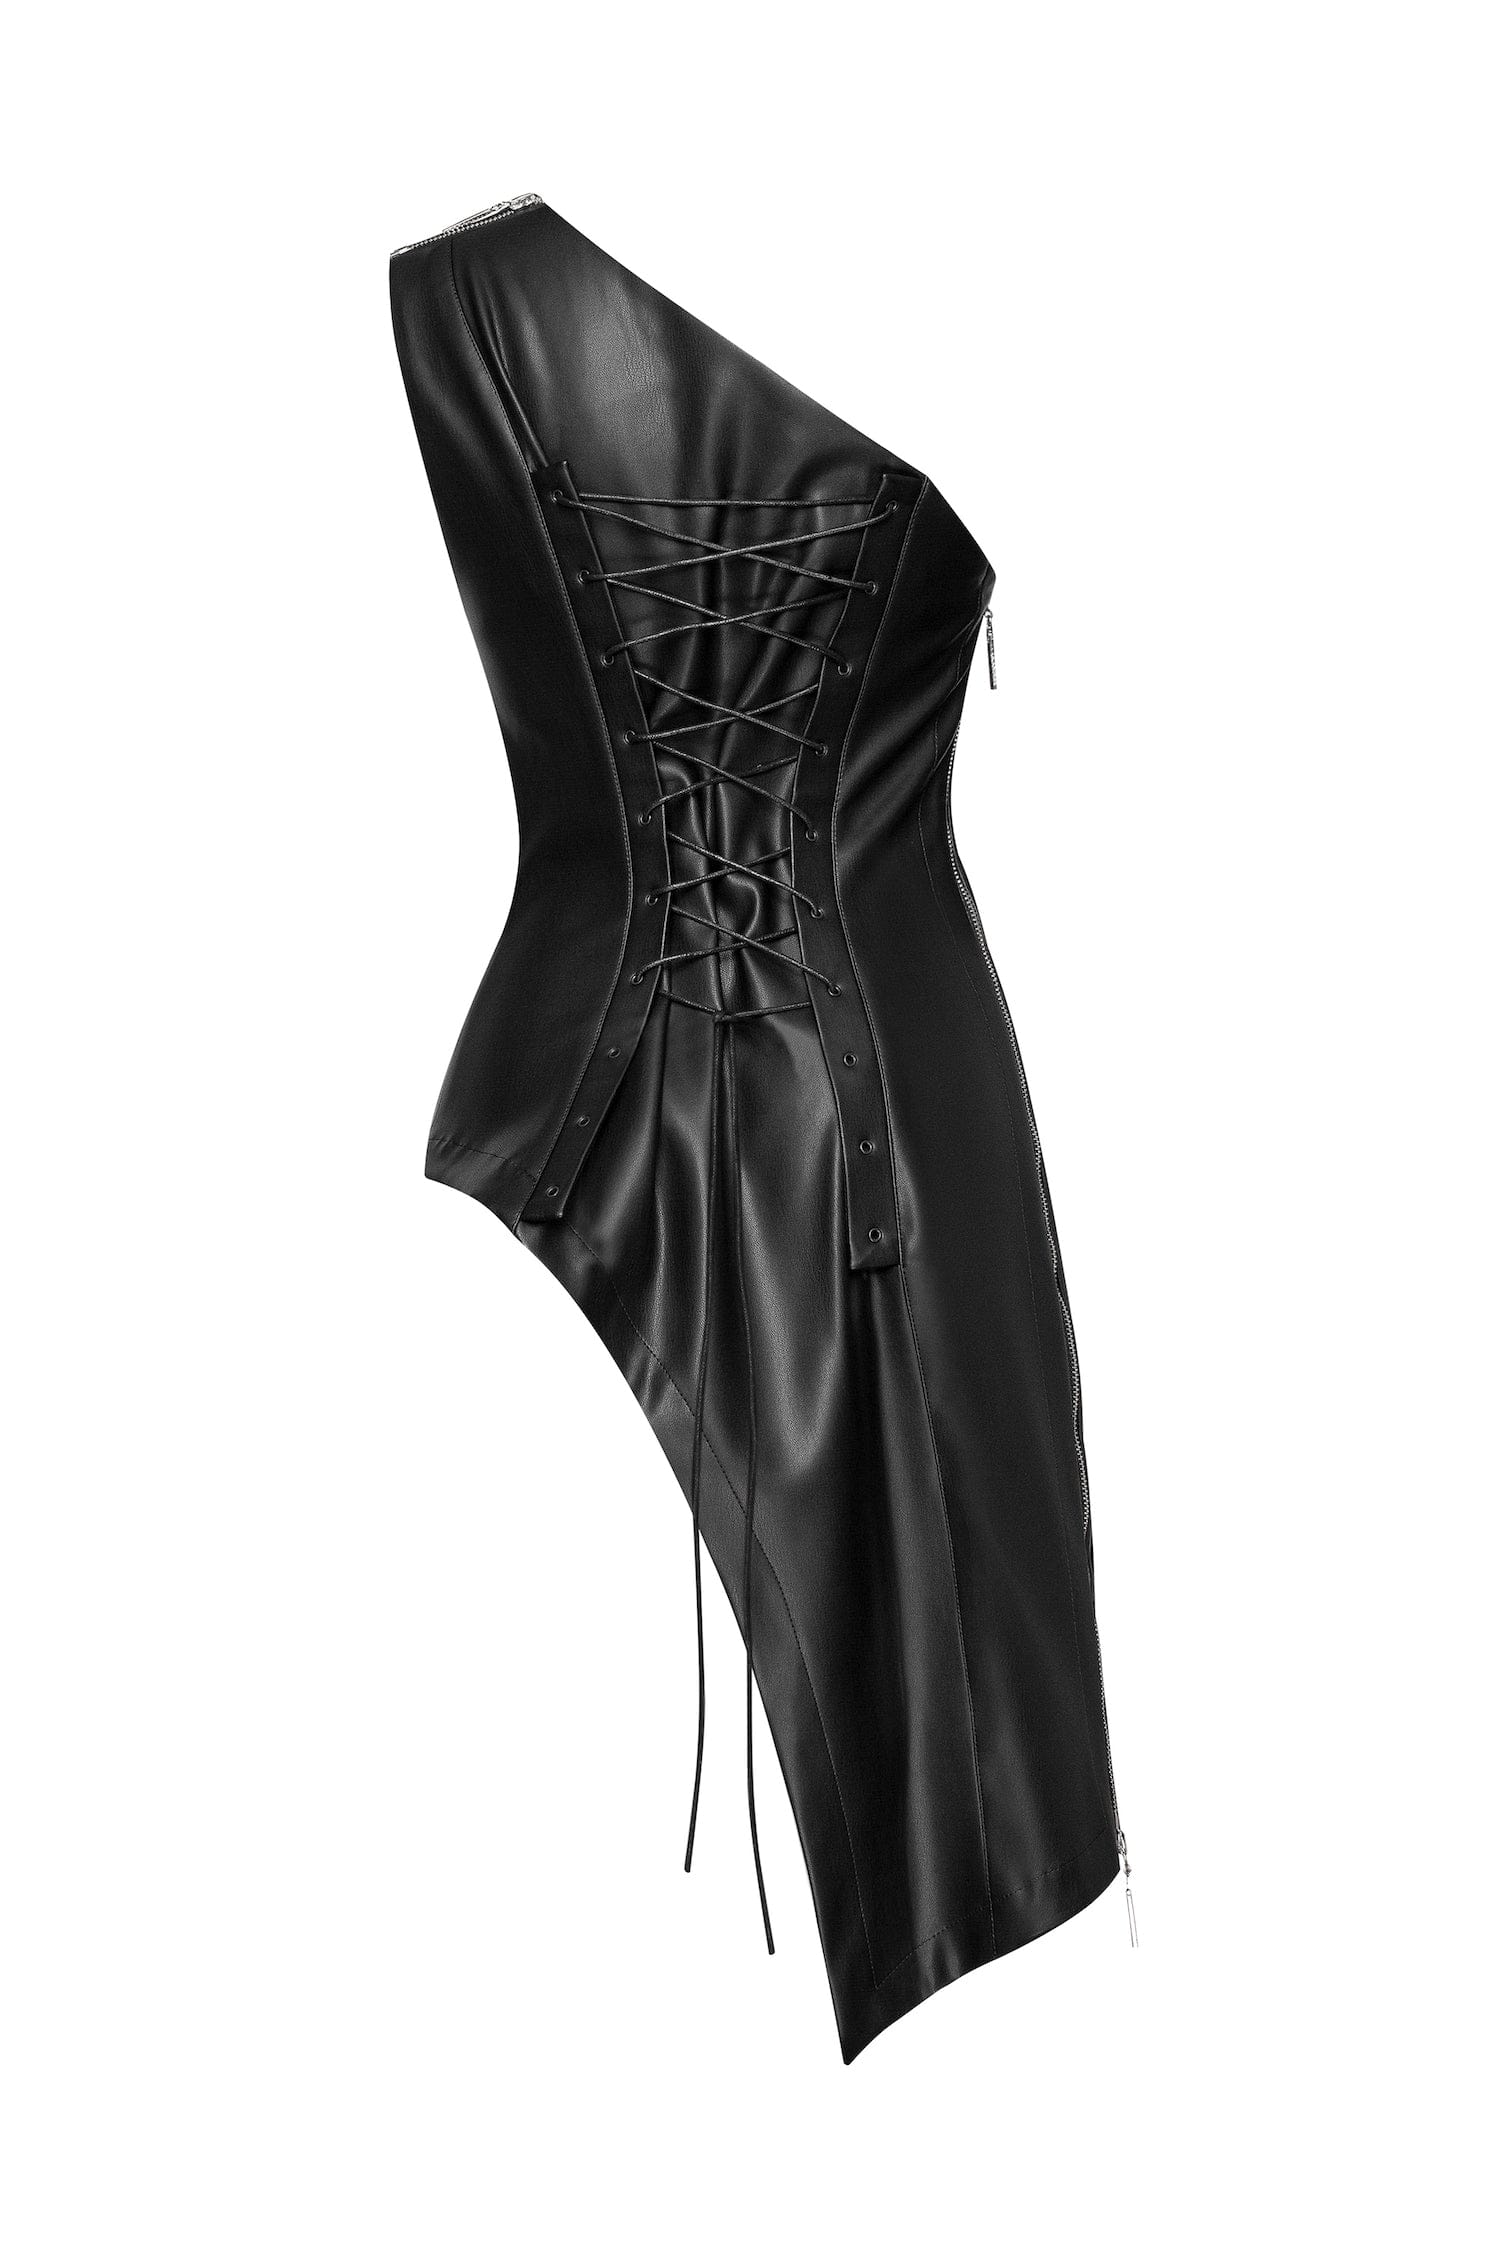 MDNT45 Flussig corset top